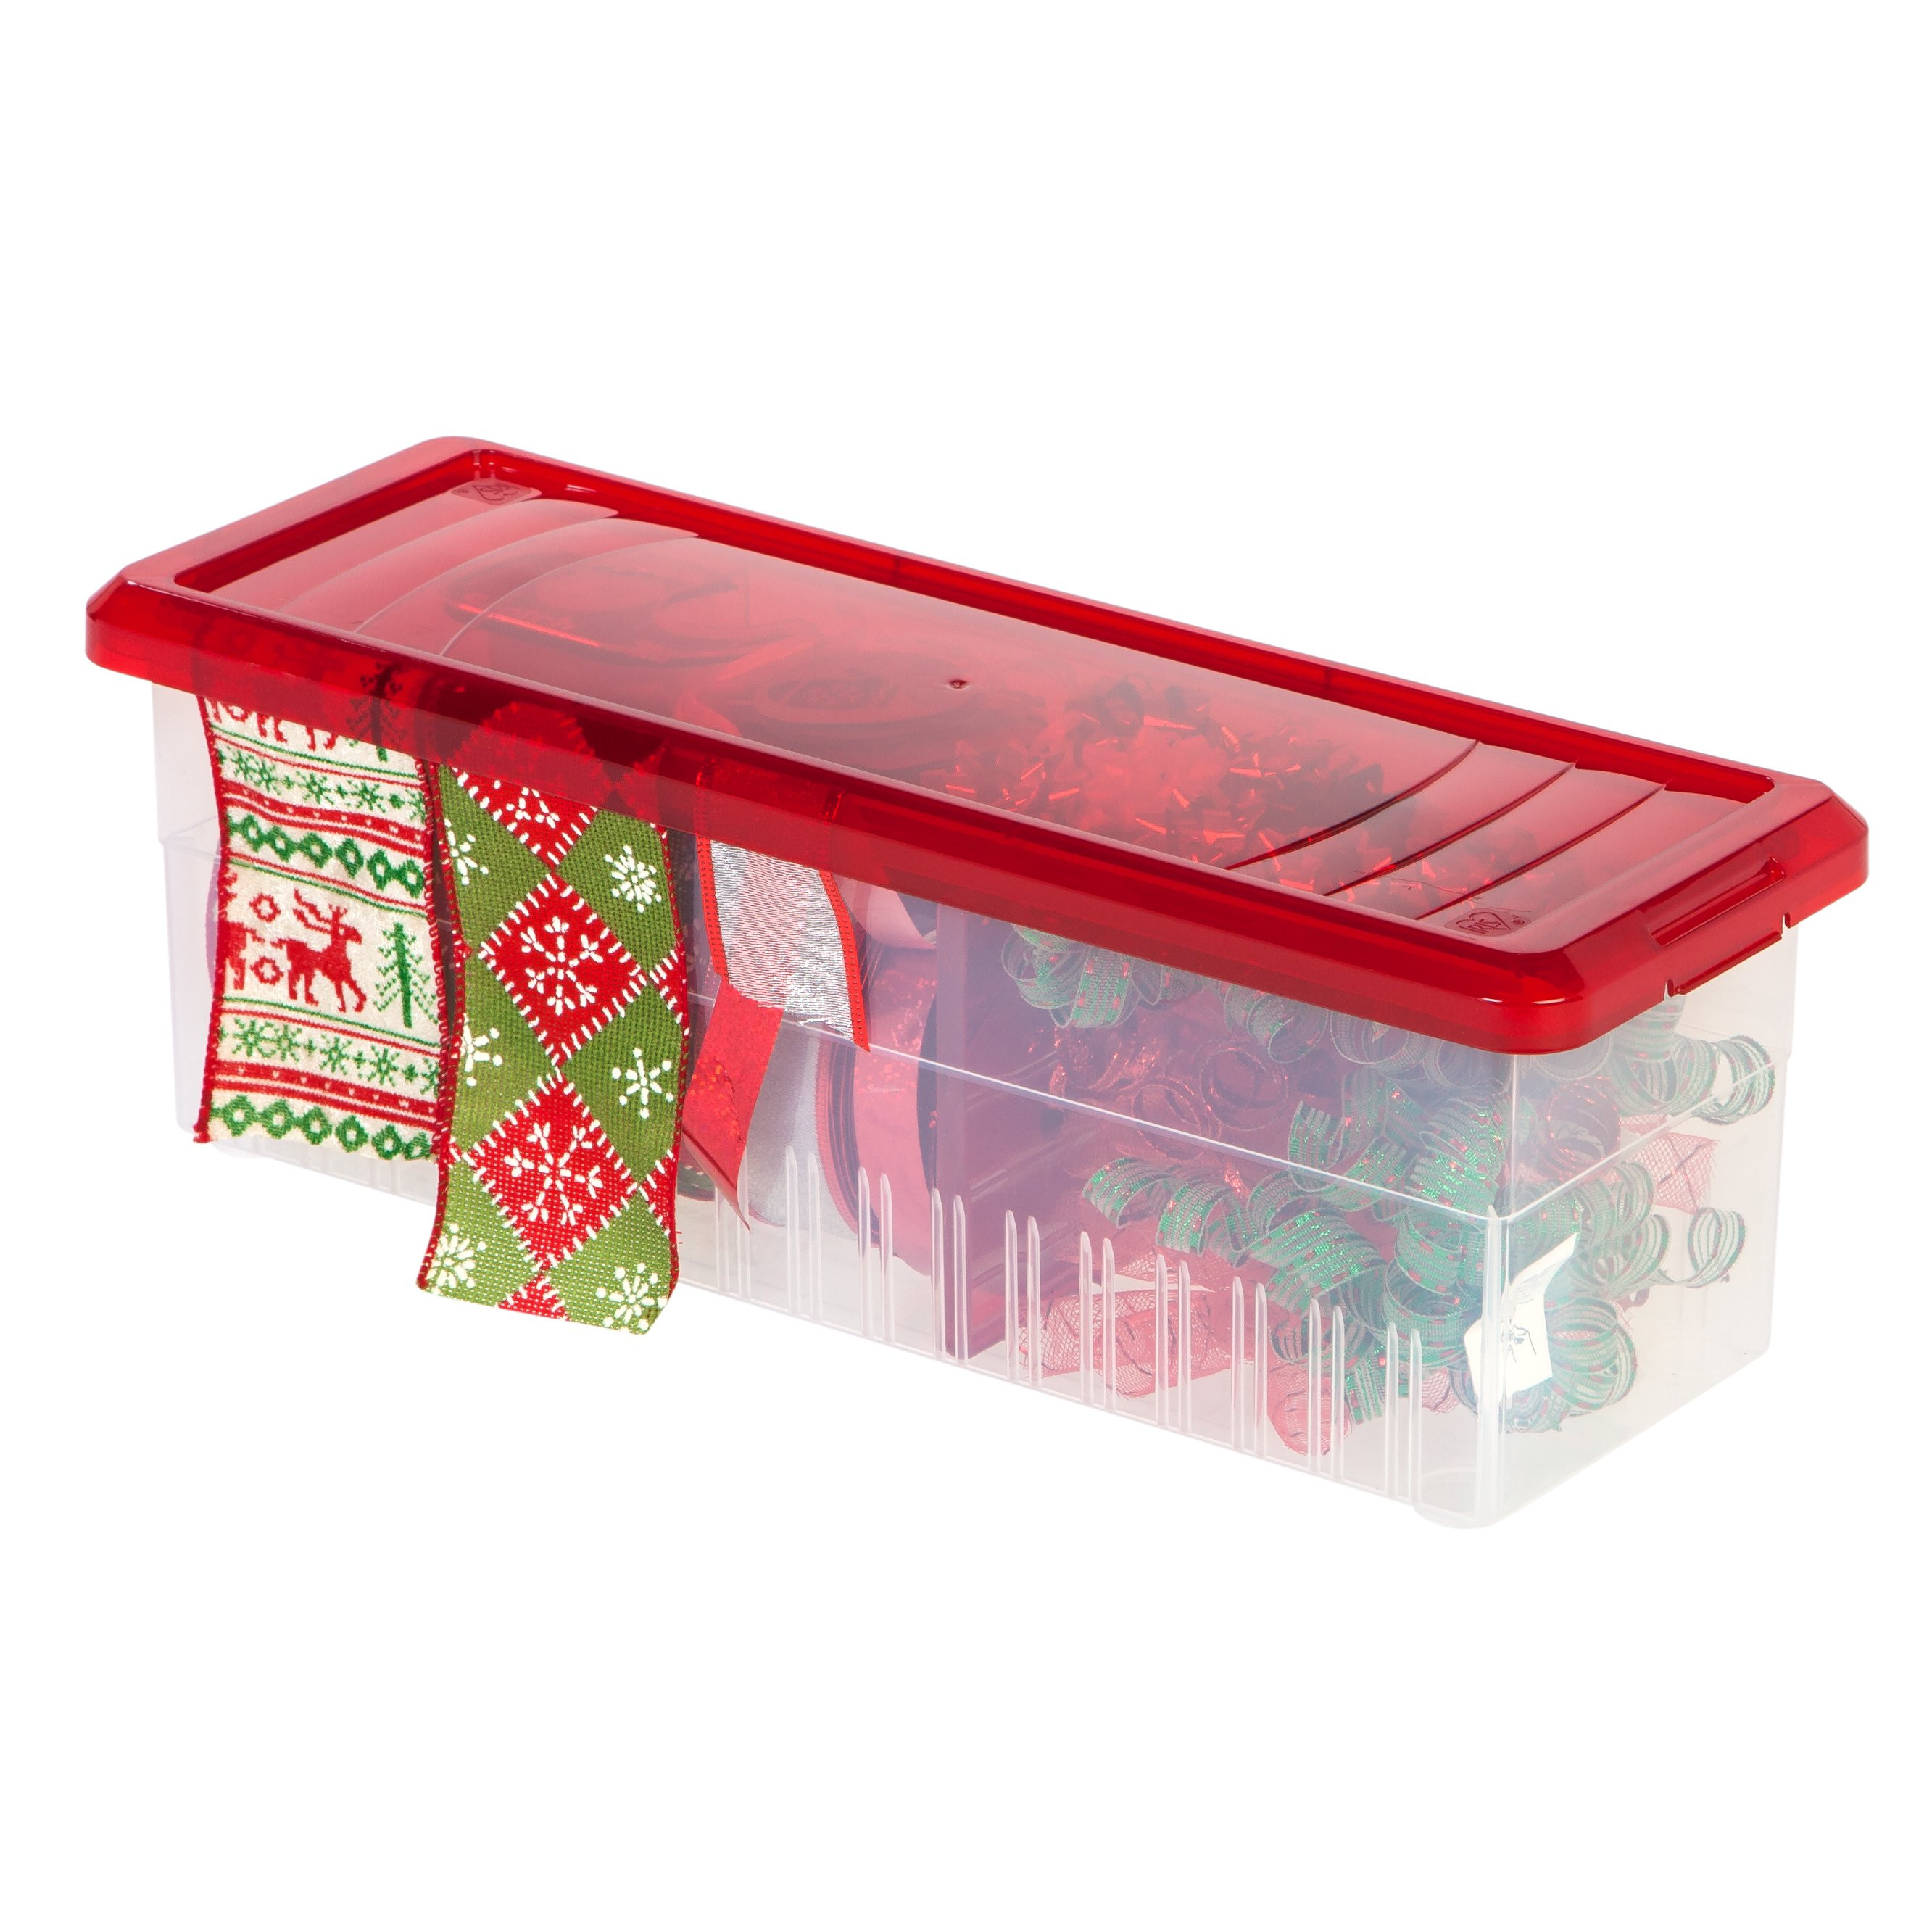 Iris Christmas Tree Storage Box
 IRIS Ribbon Storage Box & Reviews